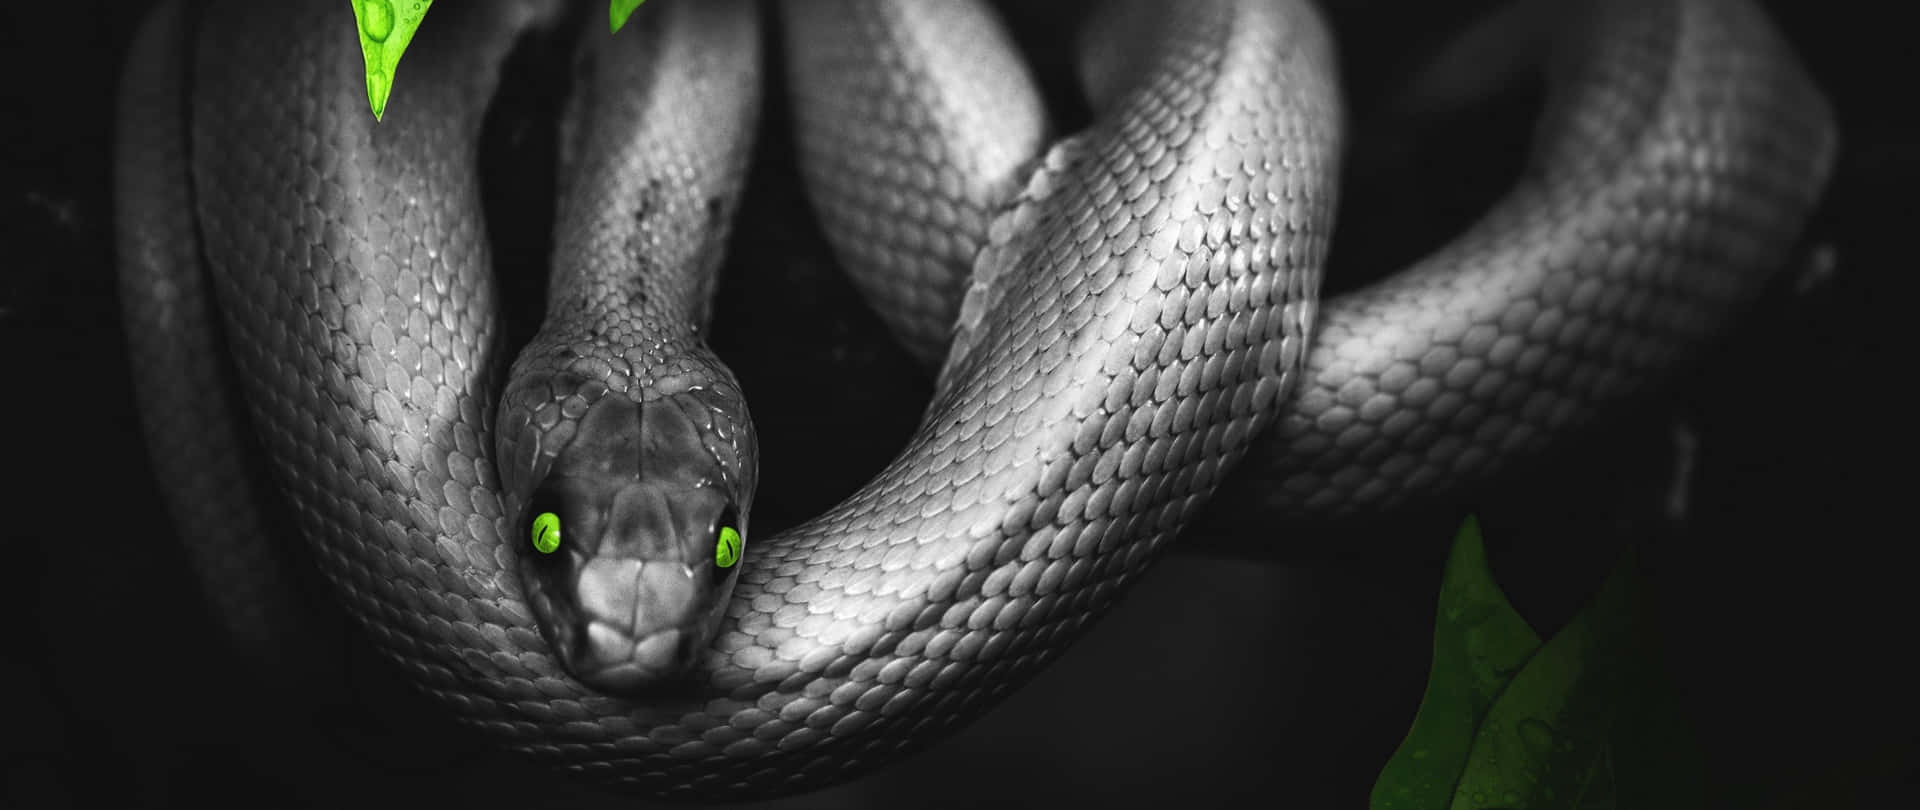 Hintergrundmit Bearbeitetem Bild Einer Schlange Mit Grünen Augen